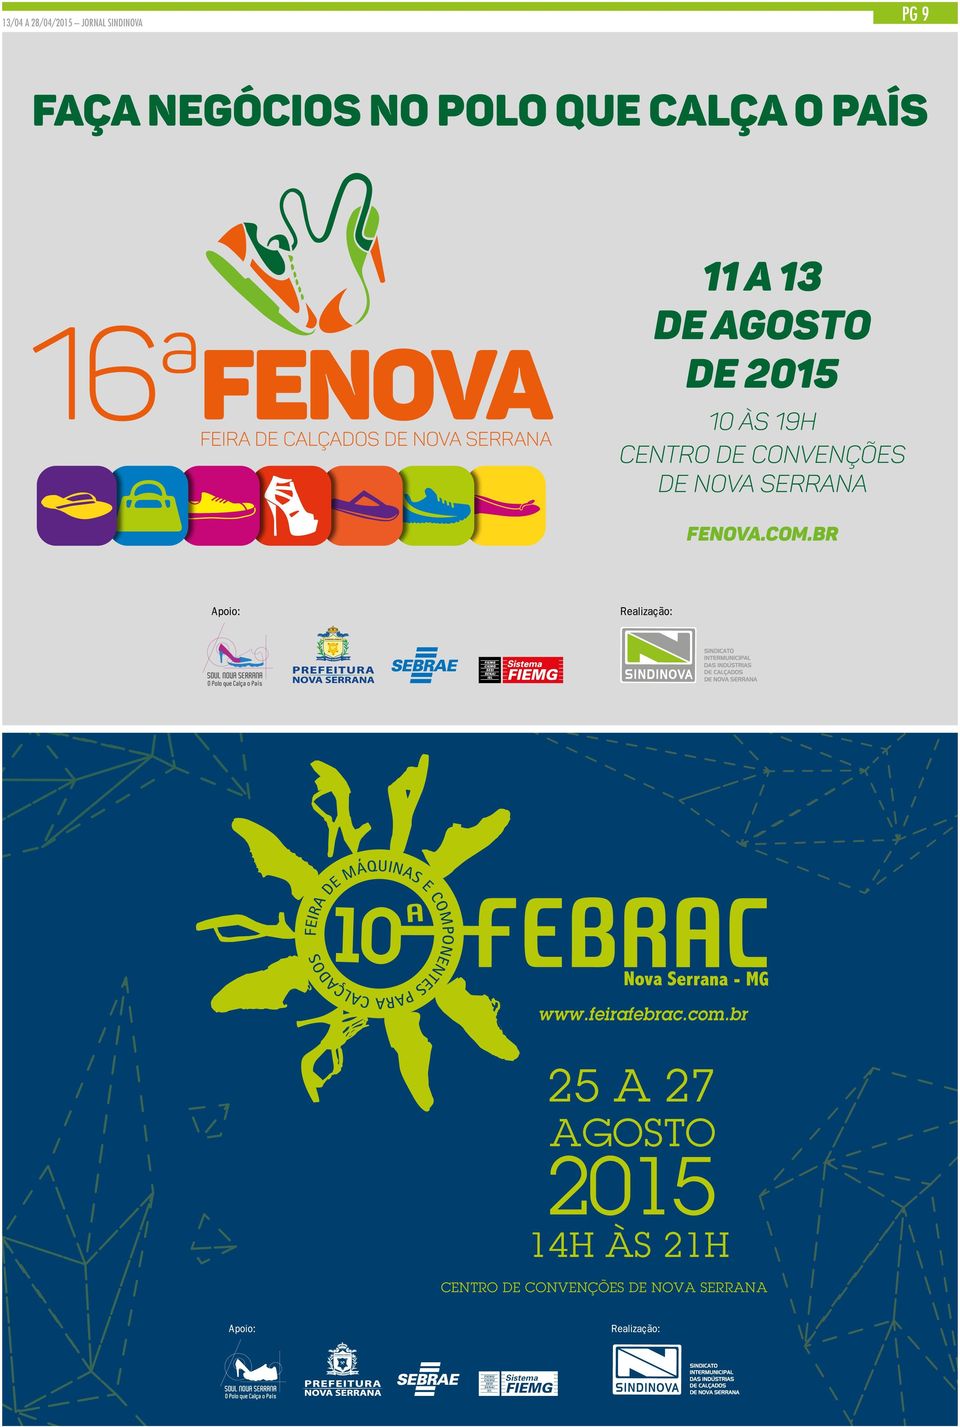 centro de convenções de nova serrana FENOVA.com.br www.feirafebrac.